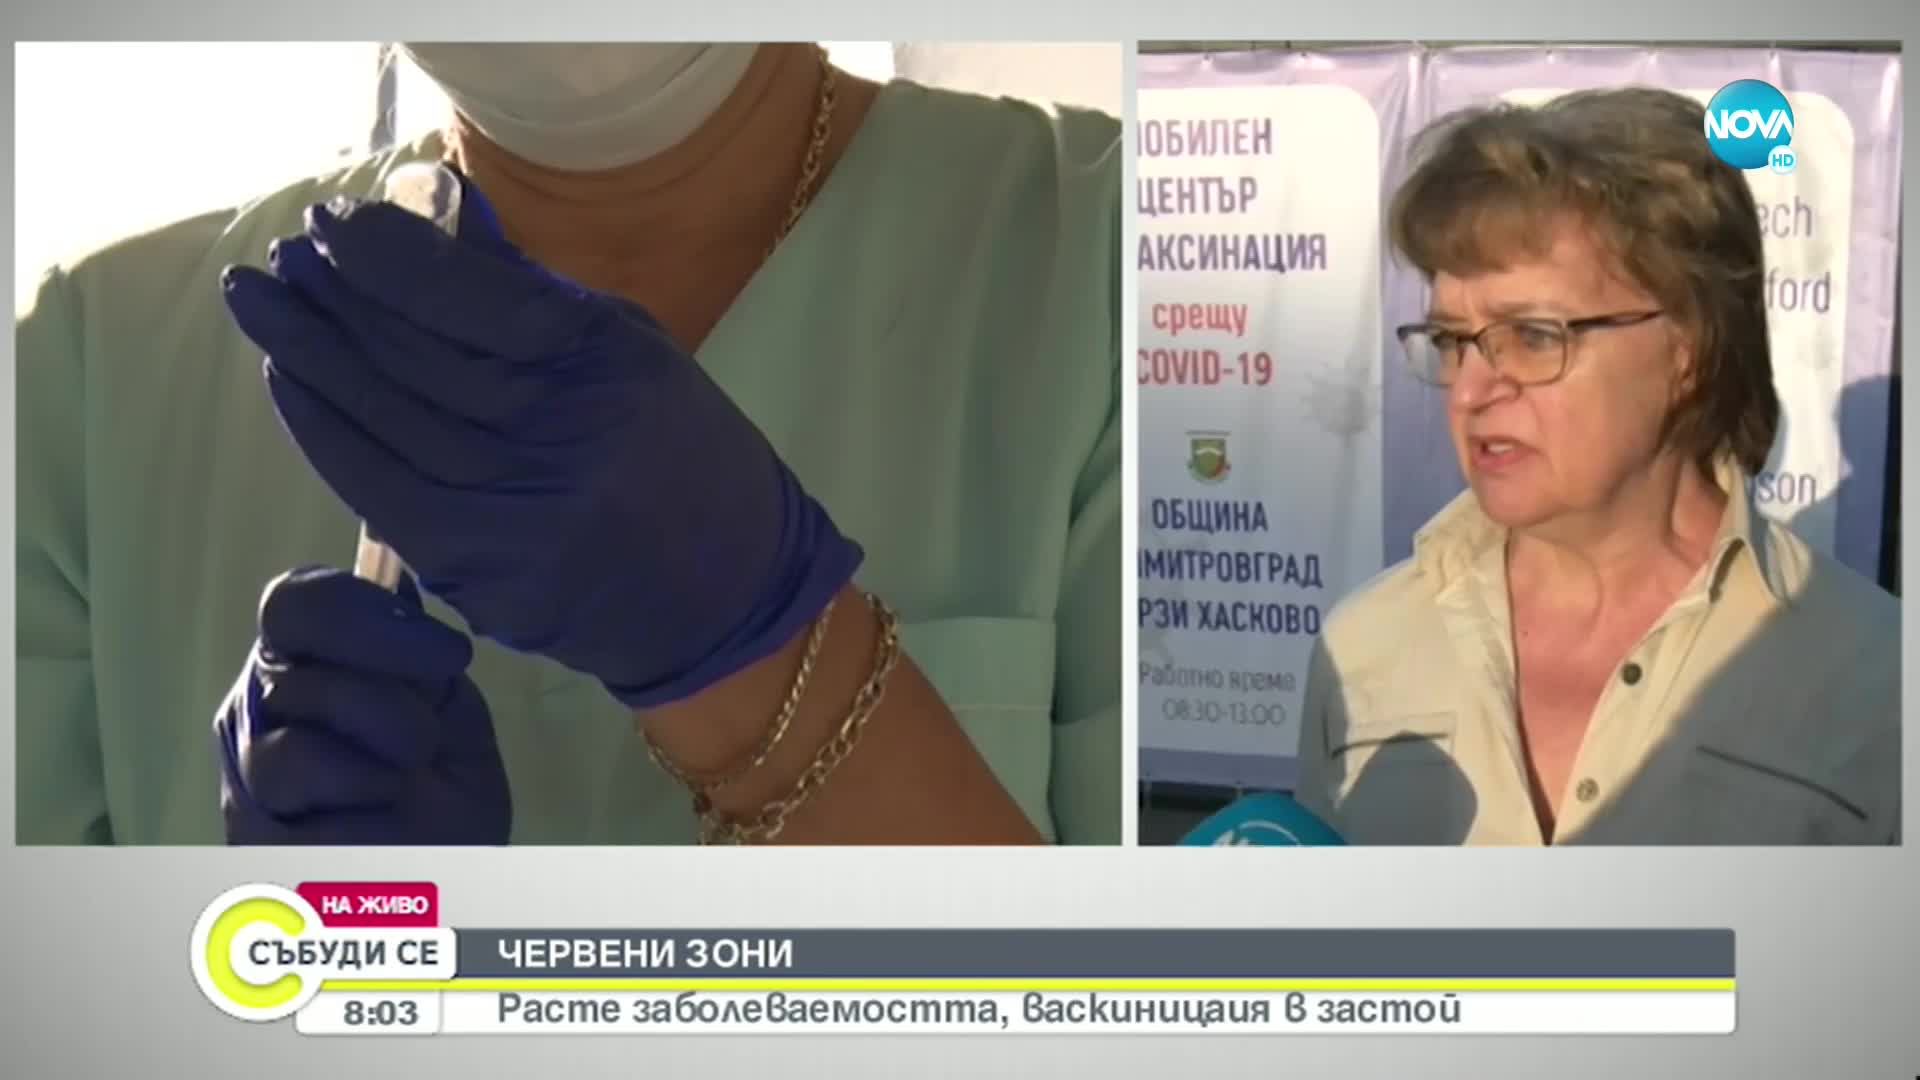 Има ли желаещи да се ваксинират във временния пункт на пазара в Димитровград